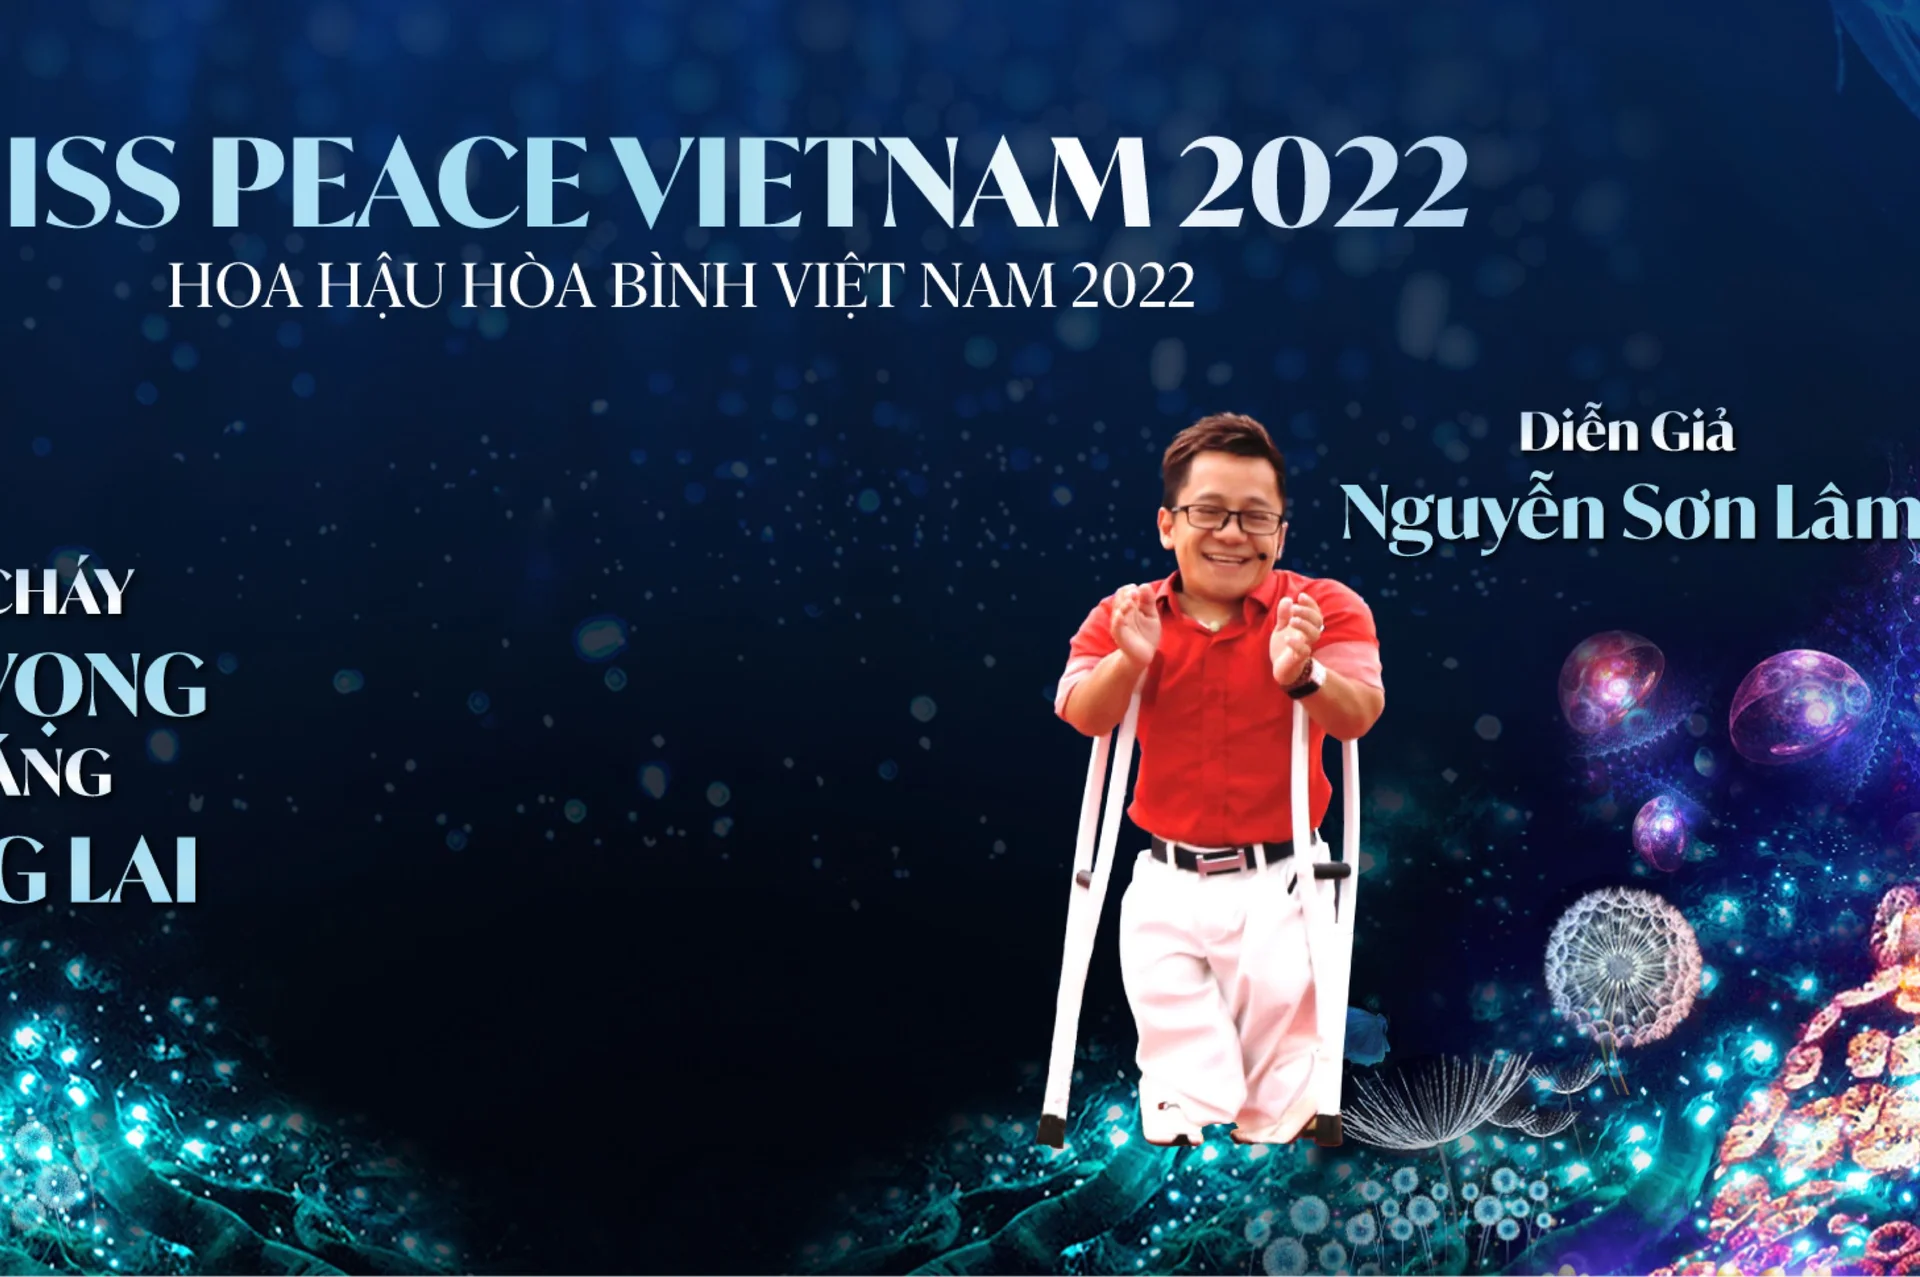 Nguyễn Sơn Lâm's cover photo